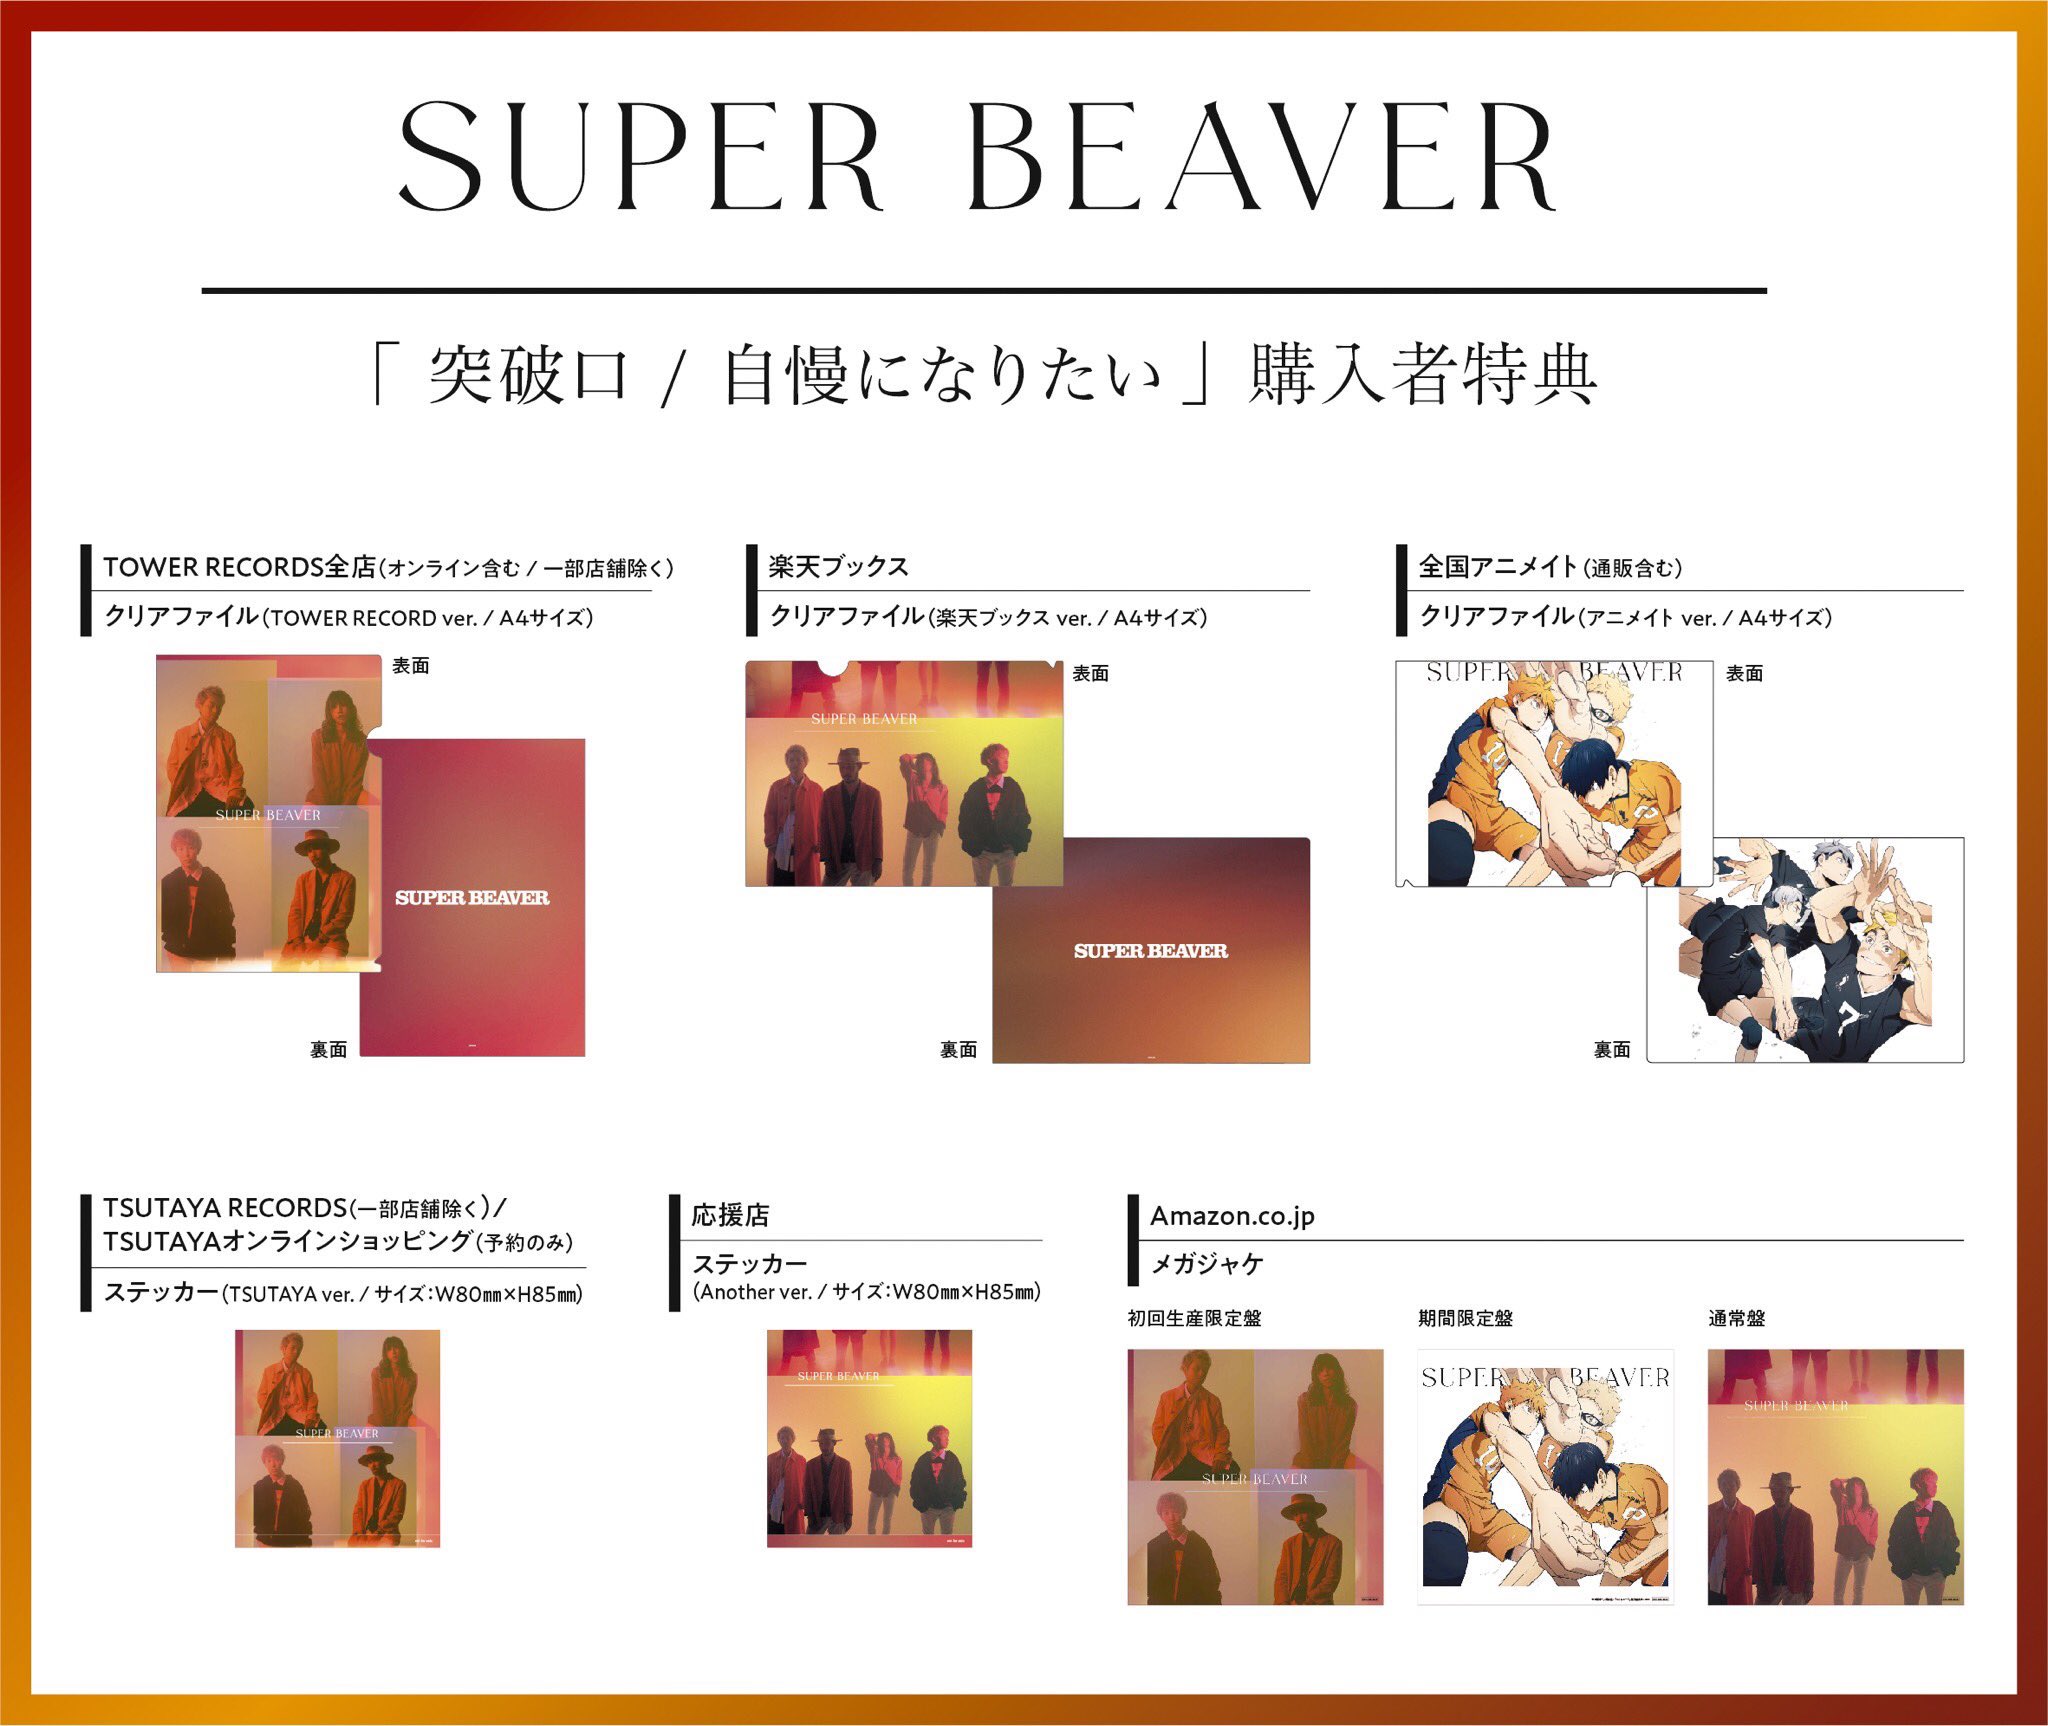 SUPER BEAVER あなた(another ver.) 大阪購入 www.villademar.com